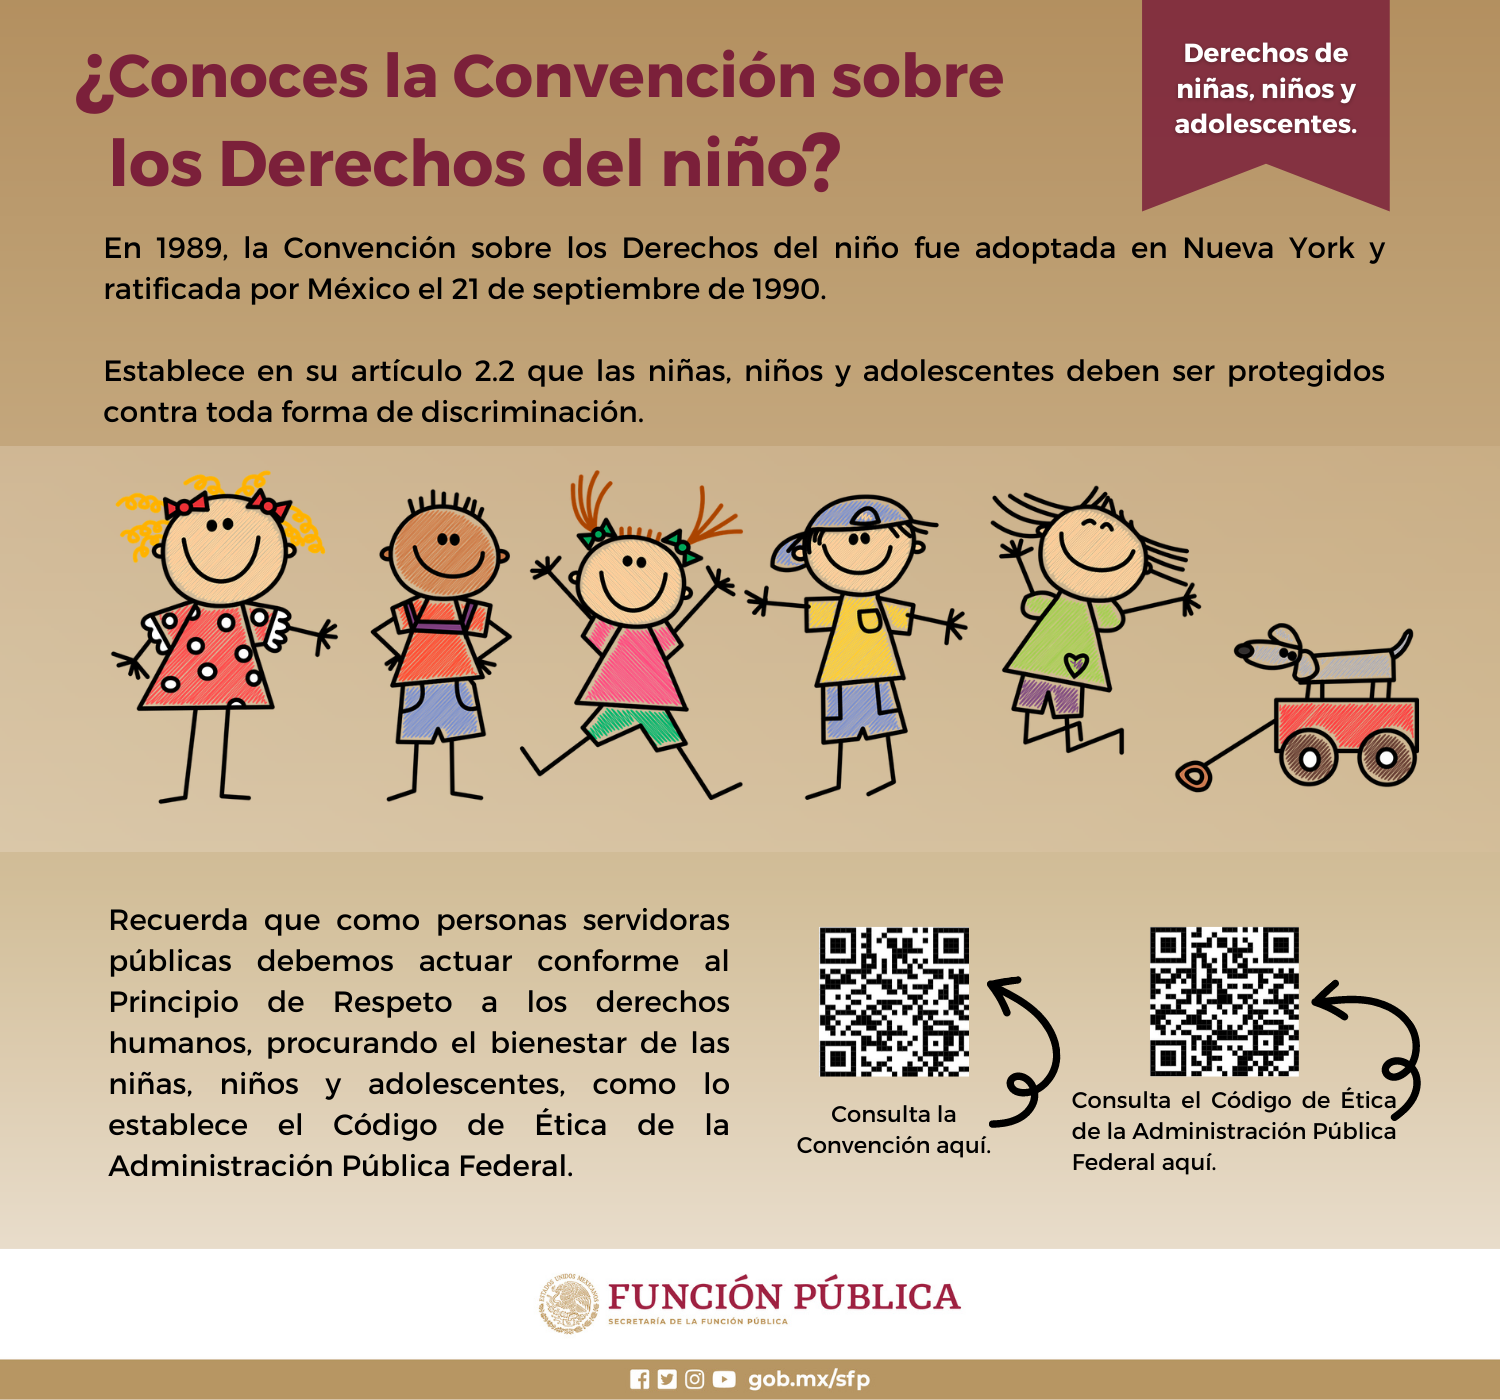 ¿Conoces la Convención sobre los Derechos del niño?